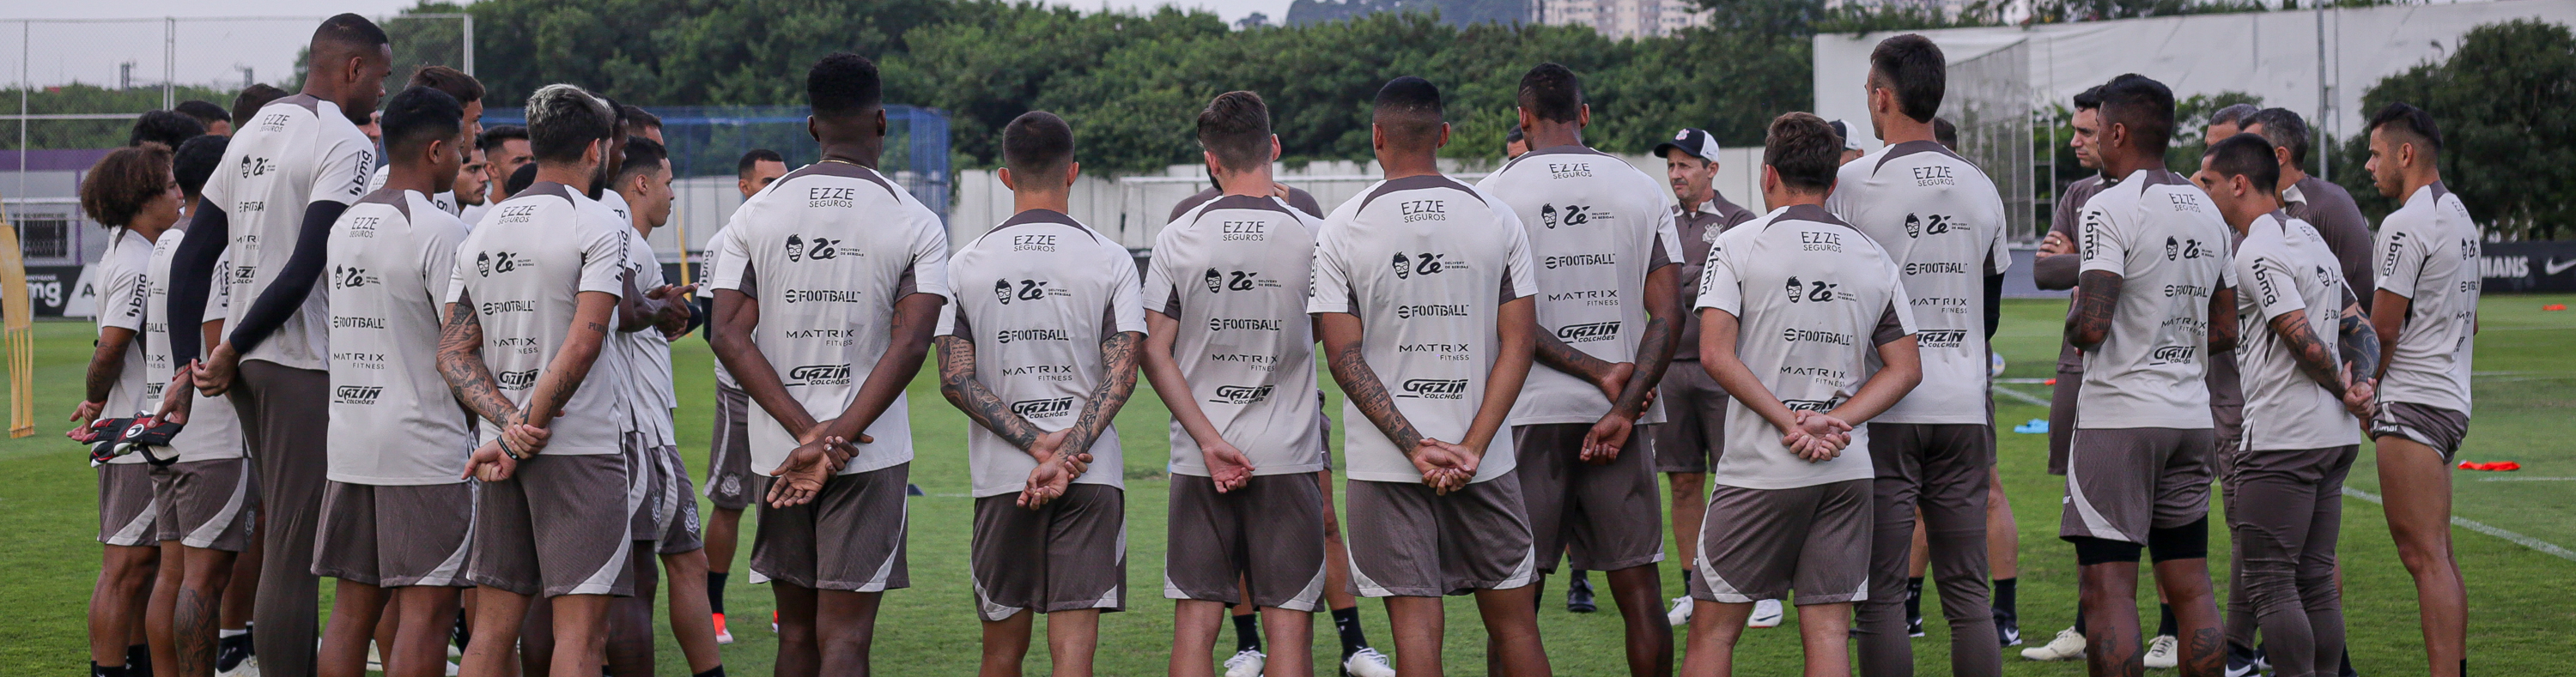 Futebol masculino: Timão inicia preparação para receber Fluminense